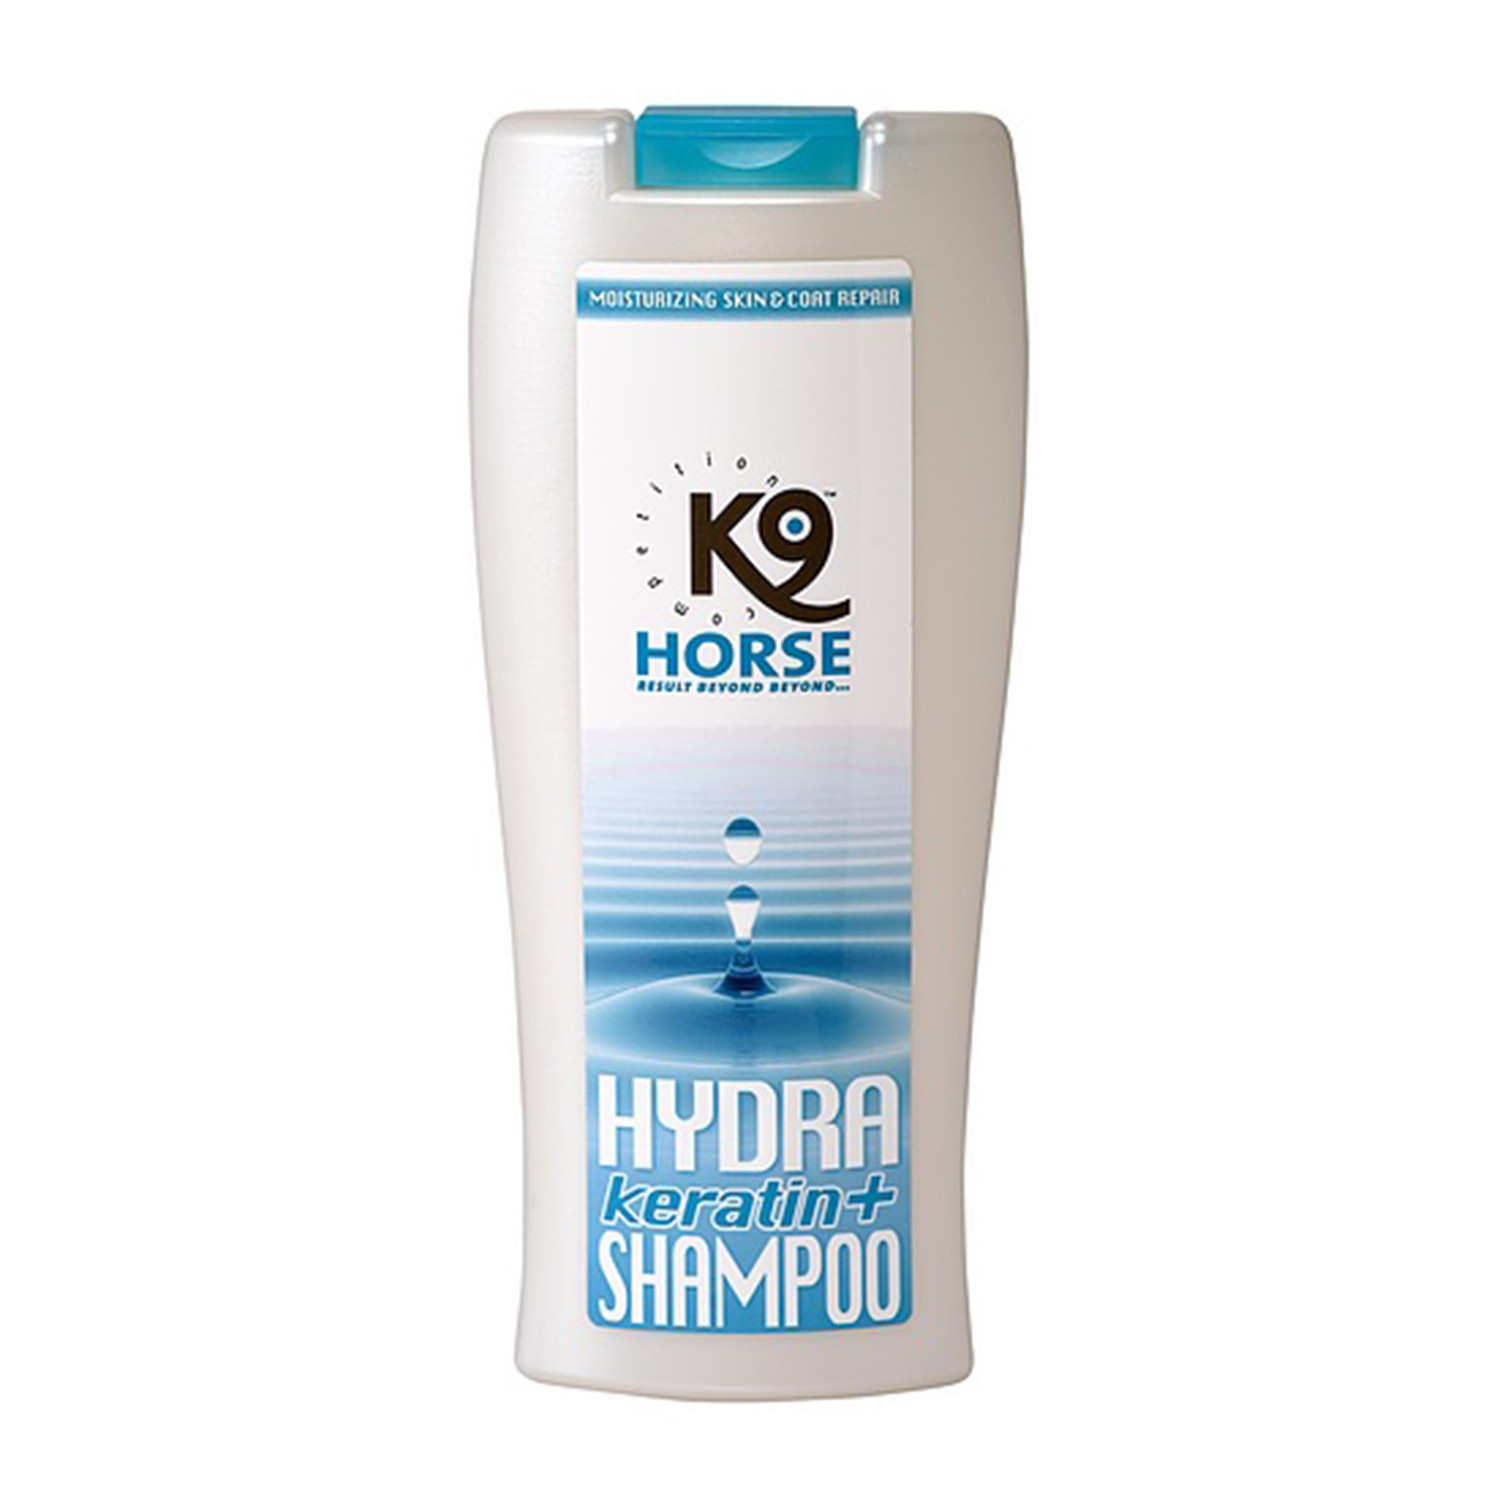 K9 hydra shampo keratin +